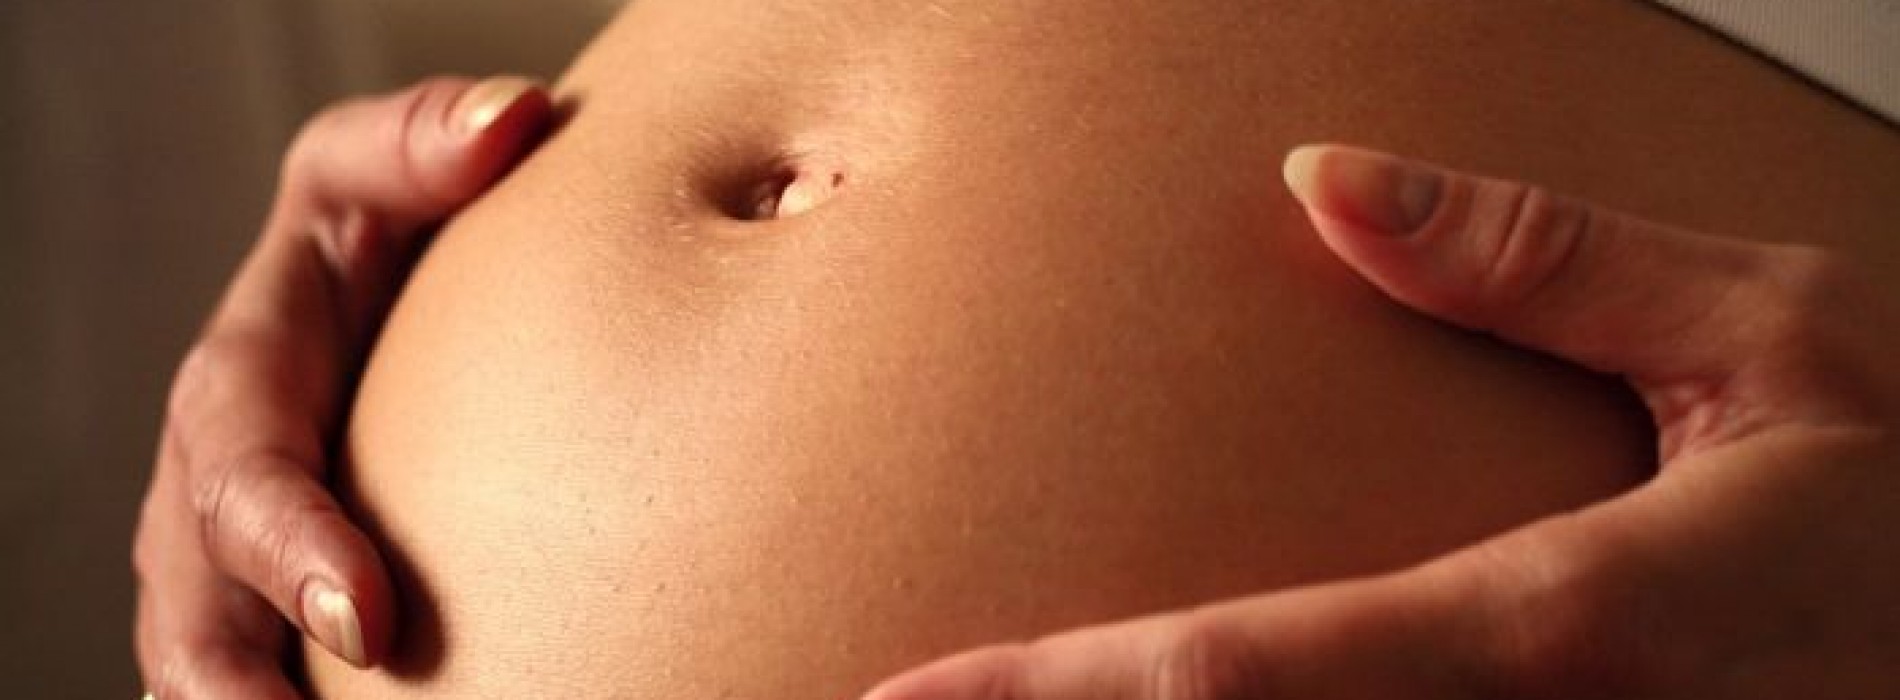 Roken tijdens de zwangerschap nóg erger dan gedacht